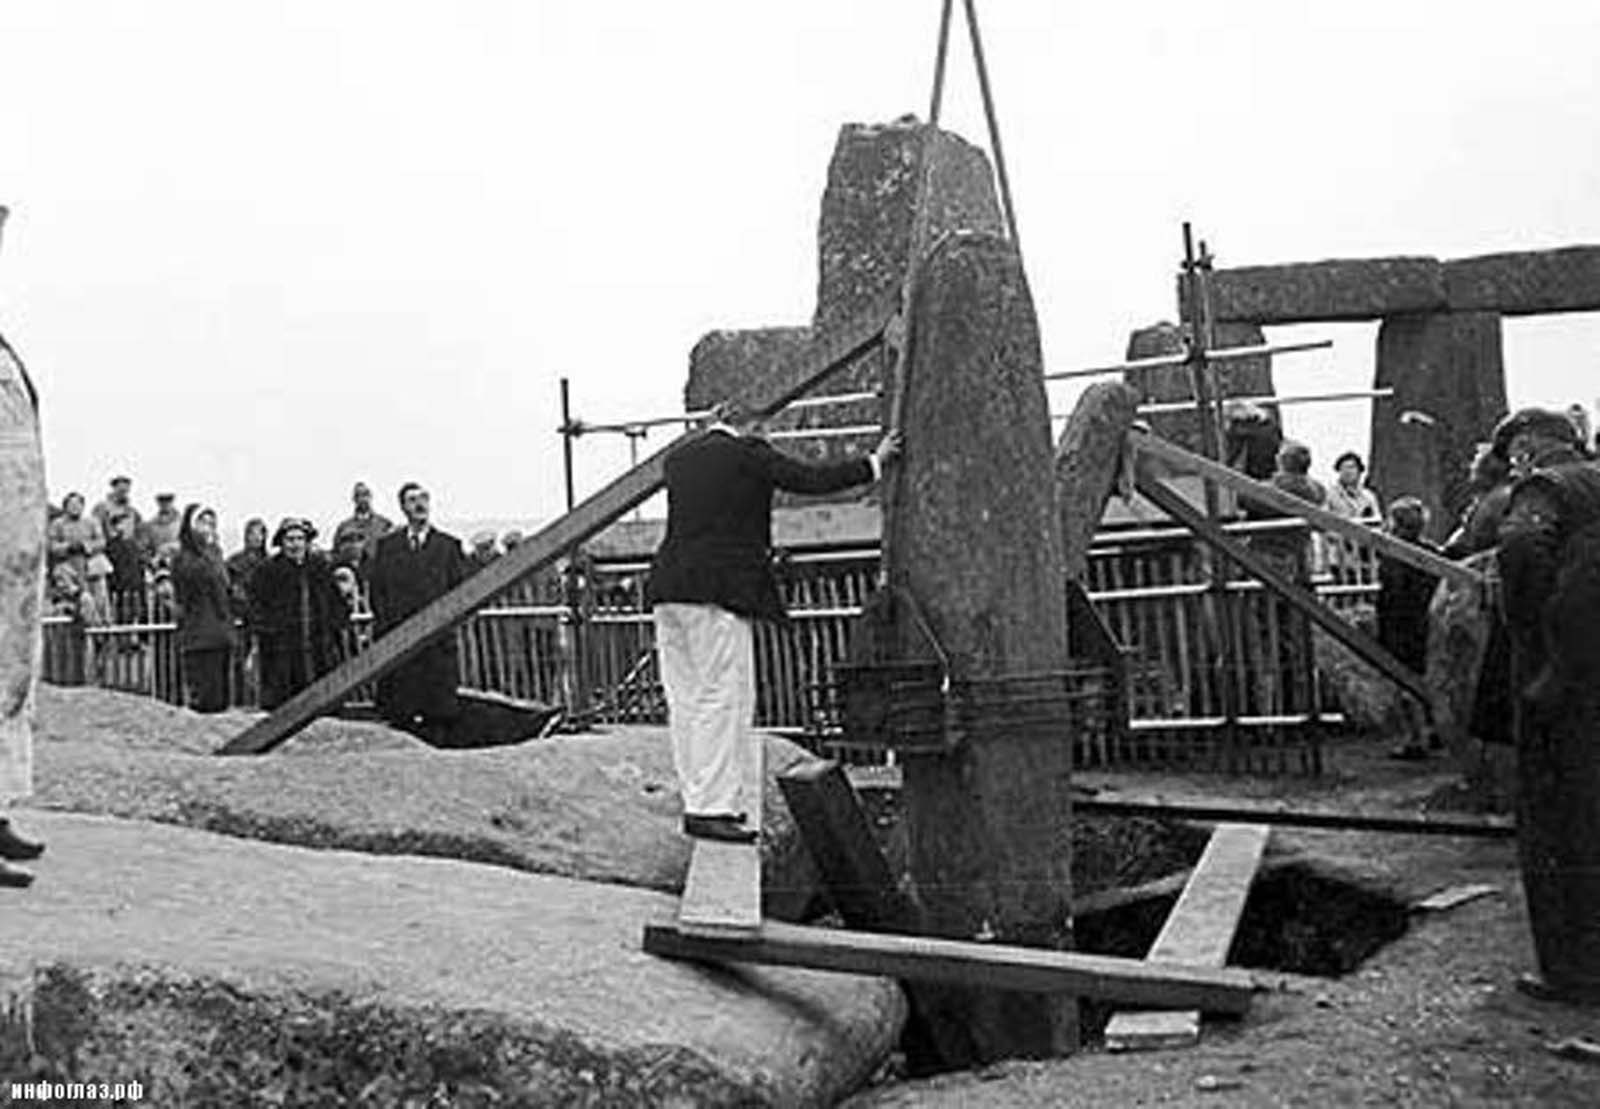 stonehenge history restoration old photographs